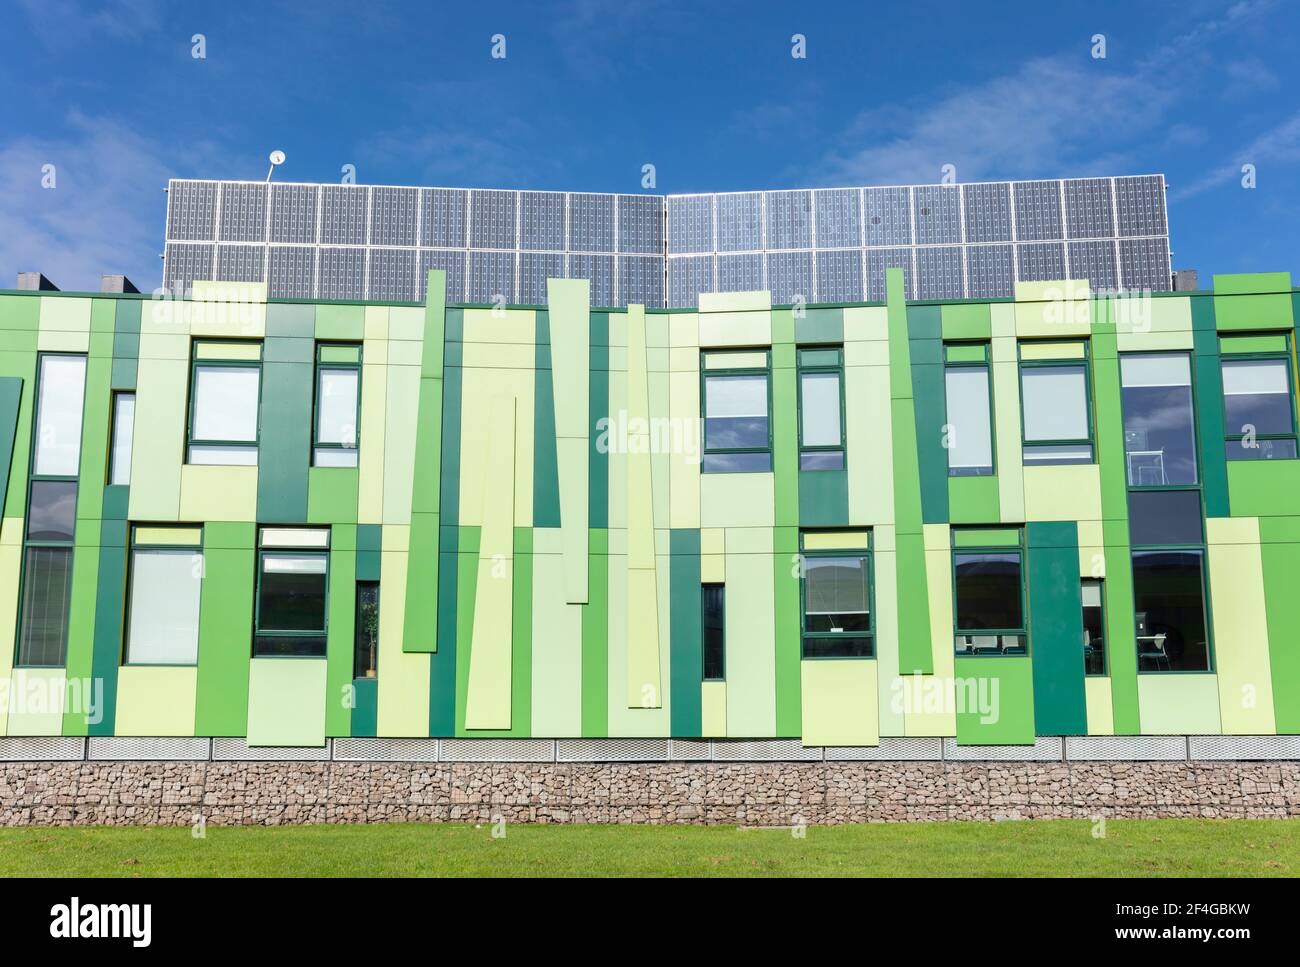 Panneaux solaires sur les bâtiments N°1 du parc scientifique de Nottingham à Nottingham University science Park Nottingham Notinghamshire Angleterre GB Royaume-Uni Europe Banque D'Images